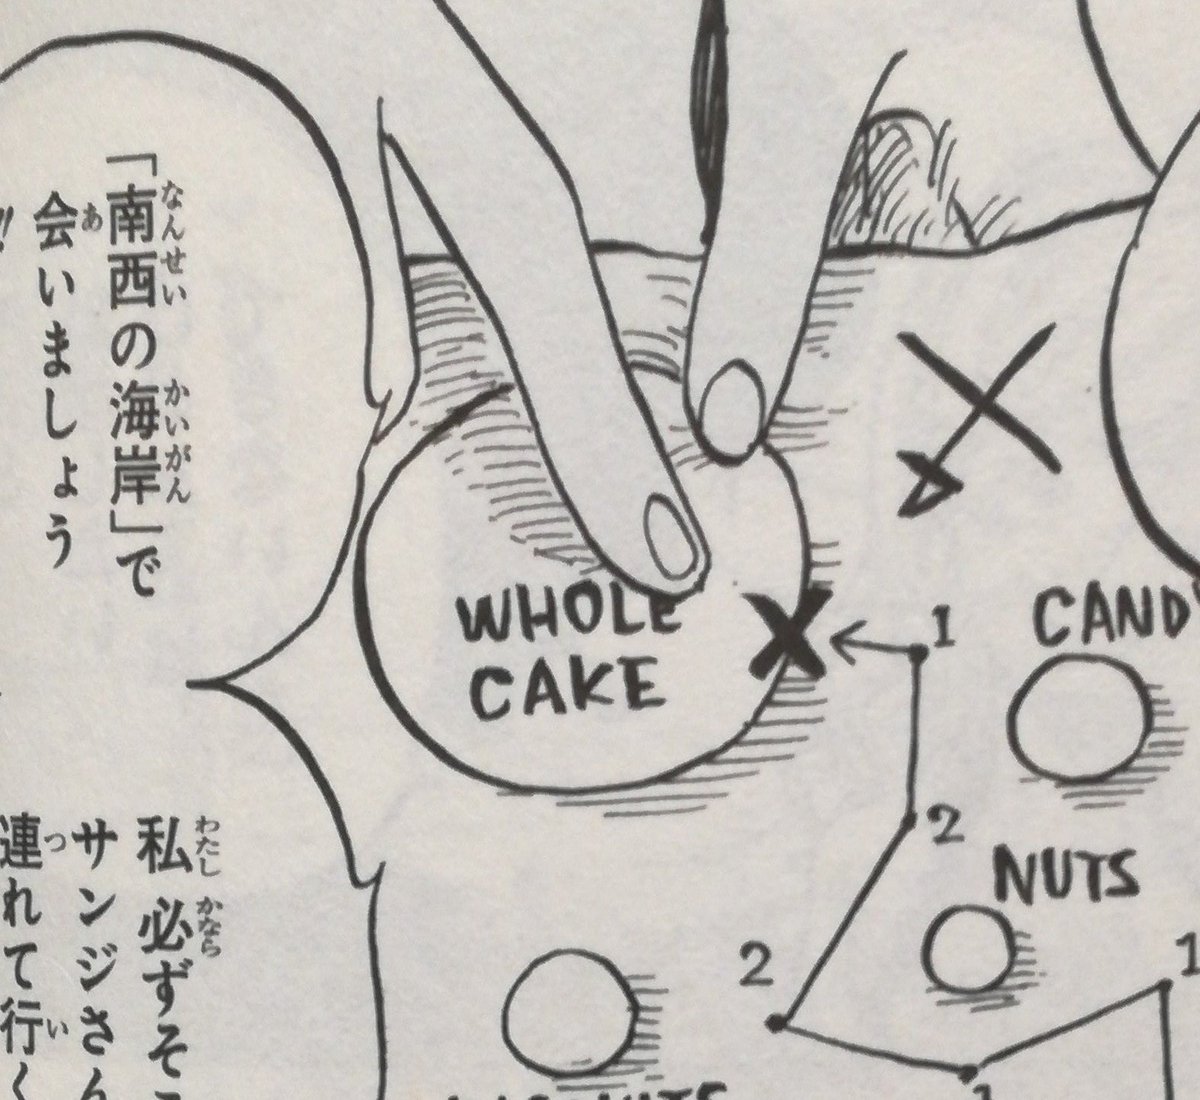 One Pieceが大好きな神木 スーパーカミキカンデ ホールケーキアイランド は Hci と Wci どちらが正しいのでしょうか